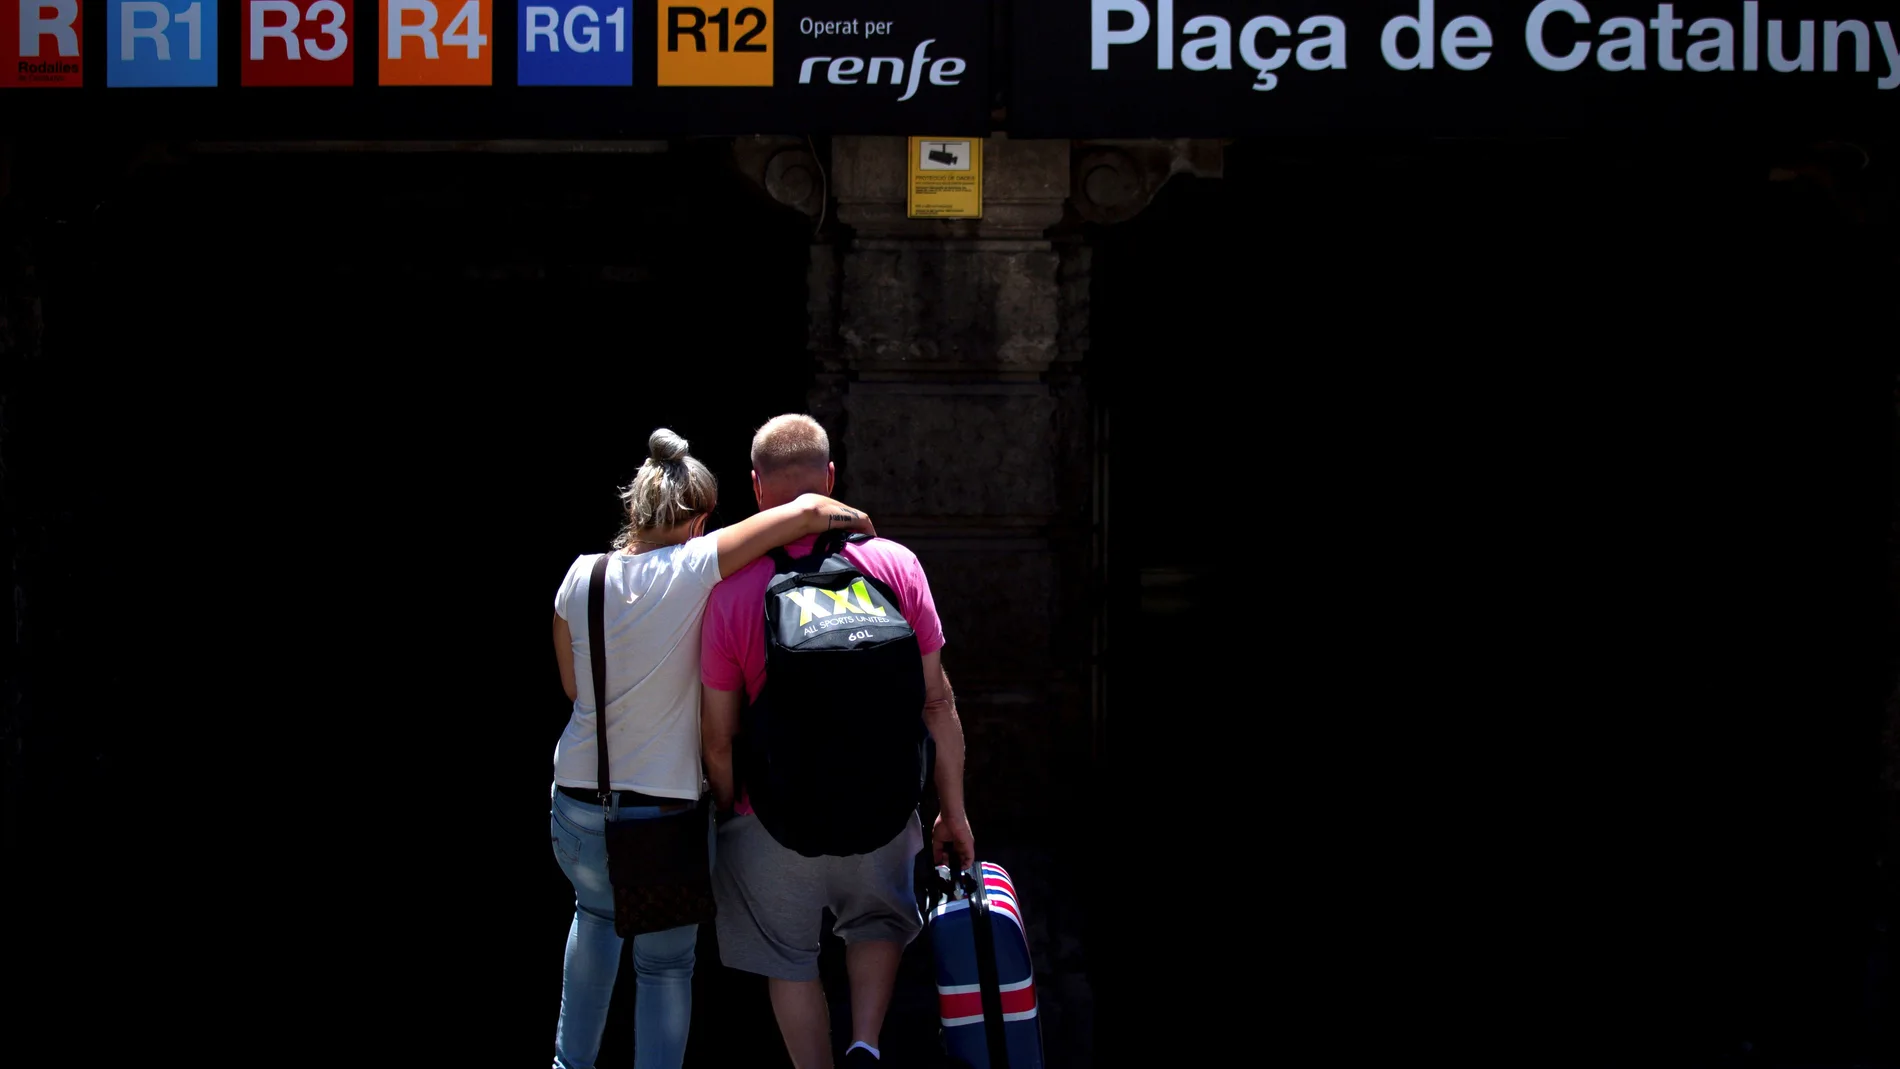 Una pareja de turistas británicos entran en en la estación de Renfe de Plaza Cataluña en Barcelona